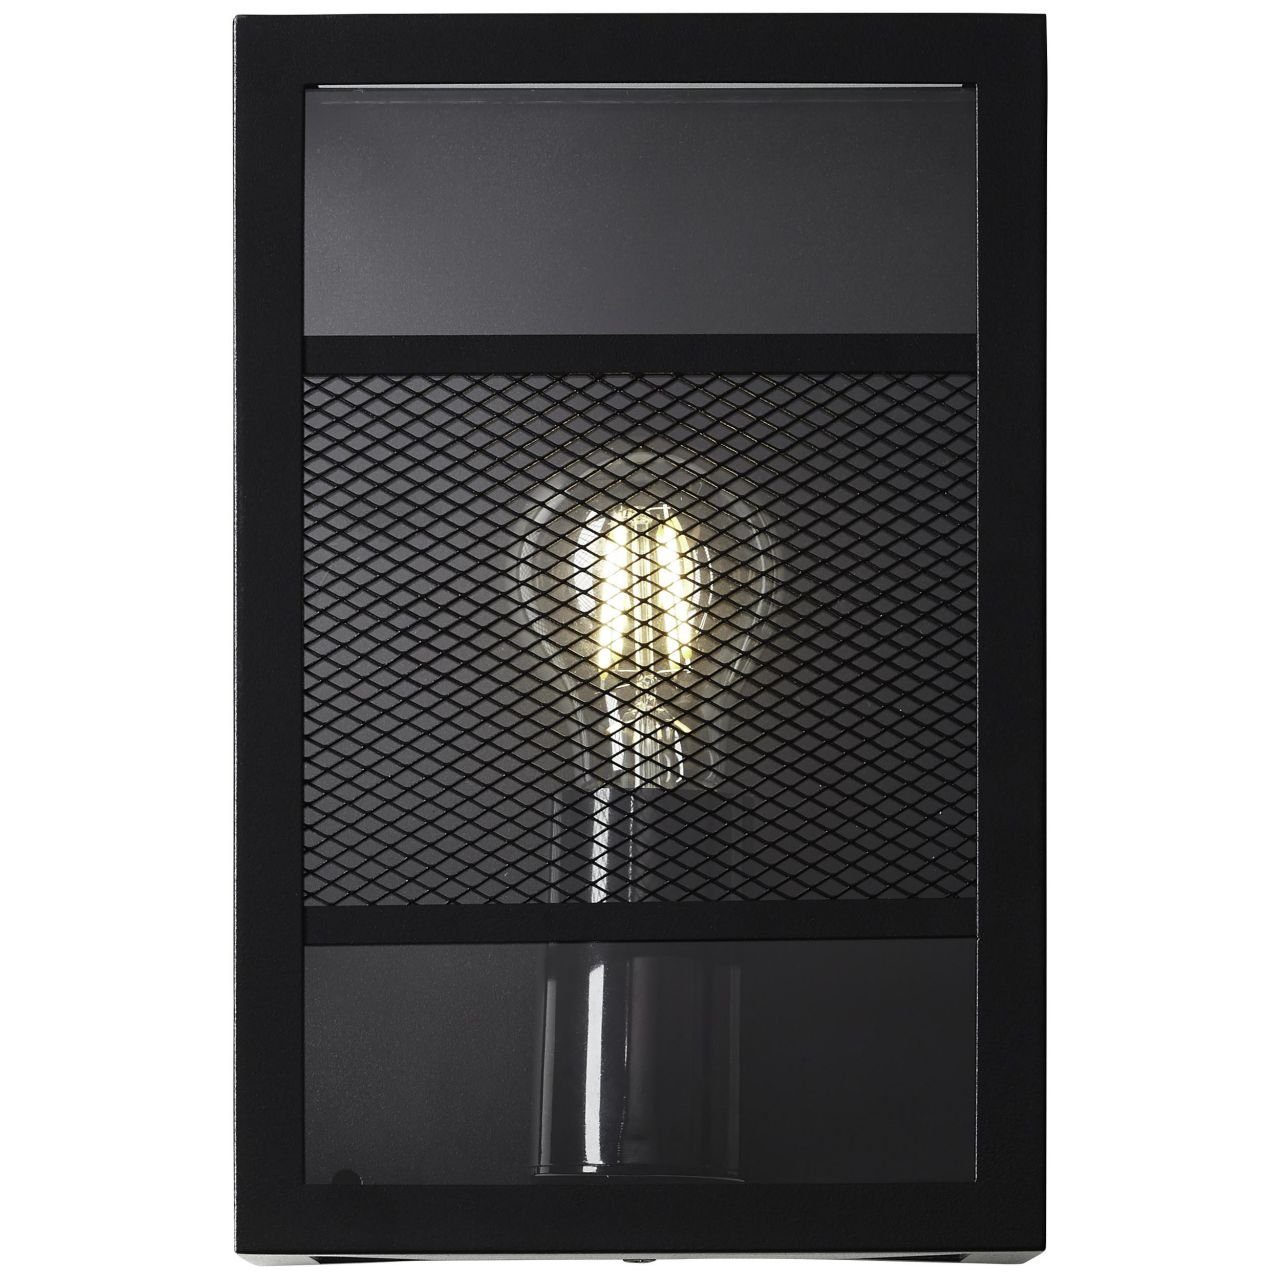 Brilliant LED schwarz, Getta, Getta A60, Außen-Wandleuchte E27 1x Lampe, Außenwandleuchte Metall/Kunststoff